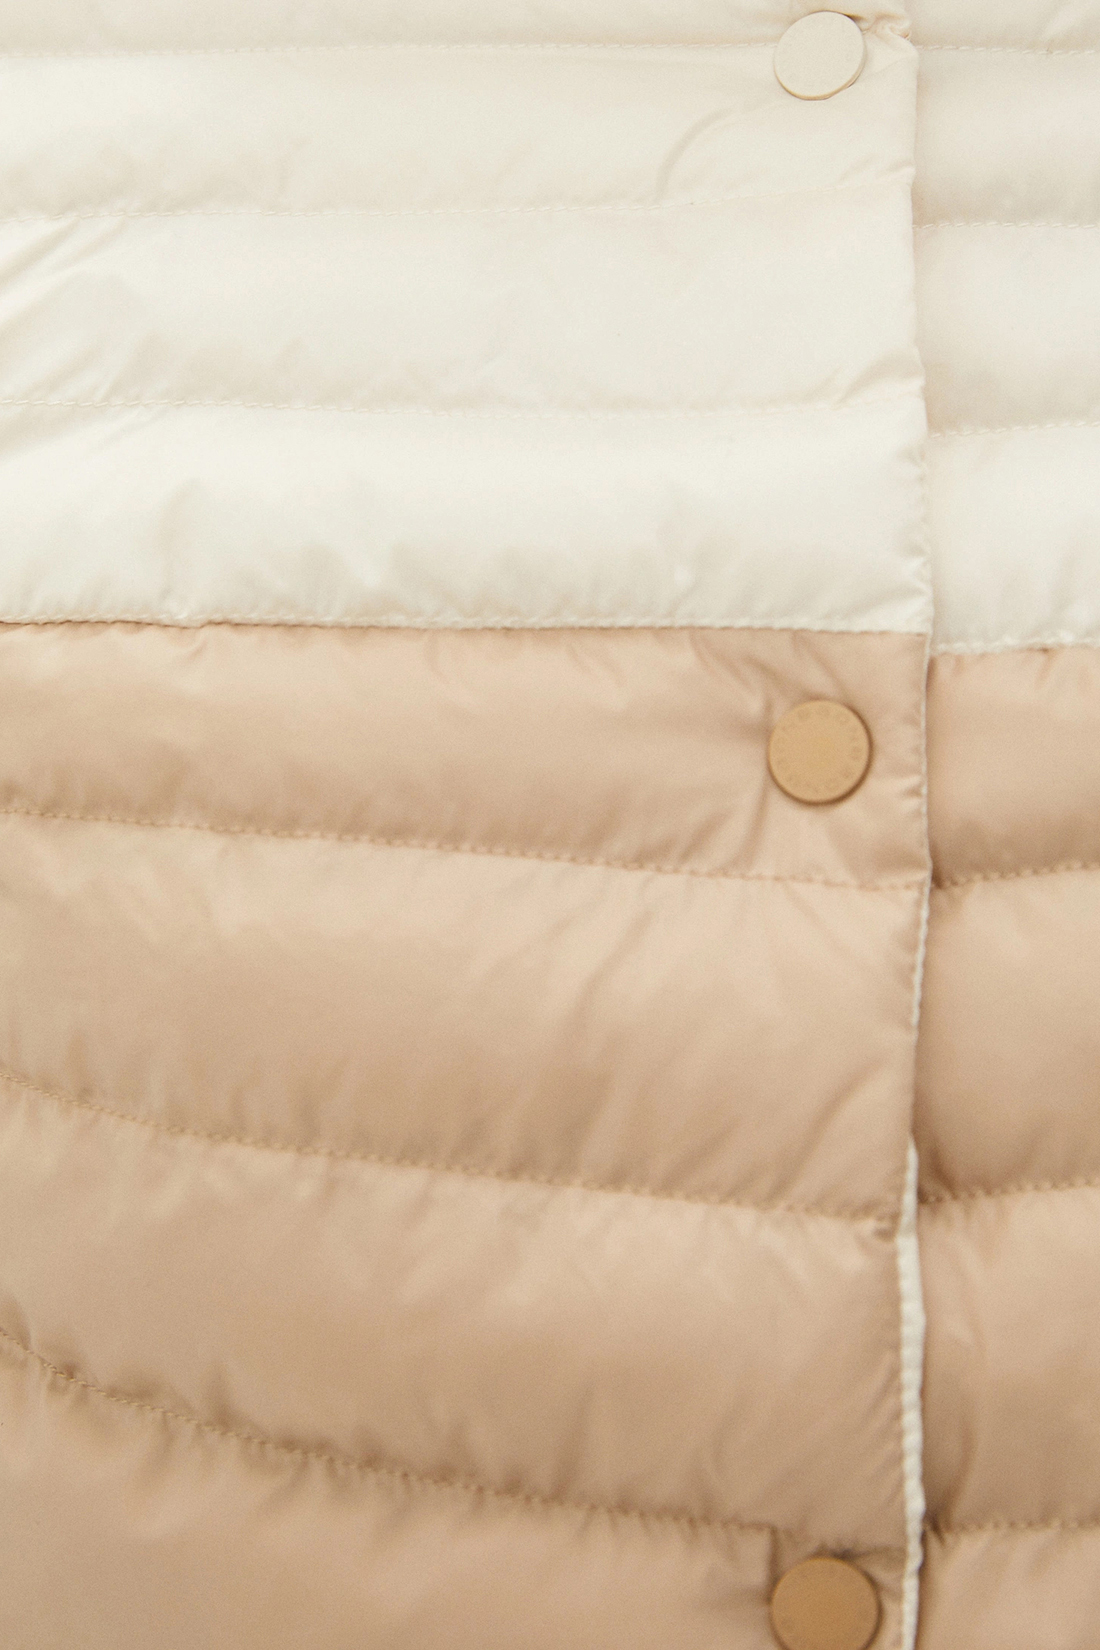 Куртка (Эко пух) (арт. baon B041050), размер M, цвет белый Куртка (Эко пух) (арт. baon B041050) - фото 3